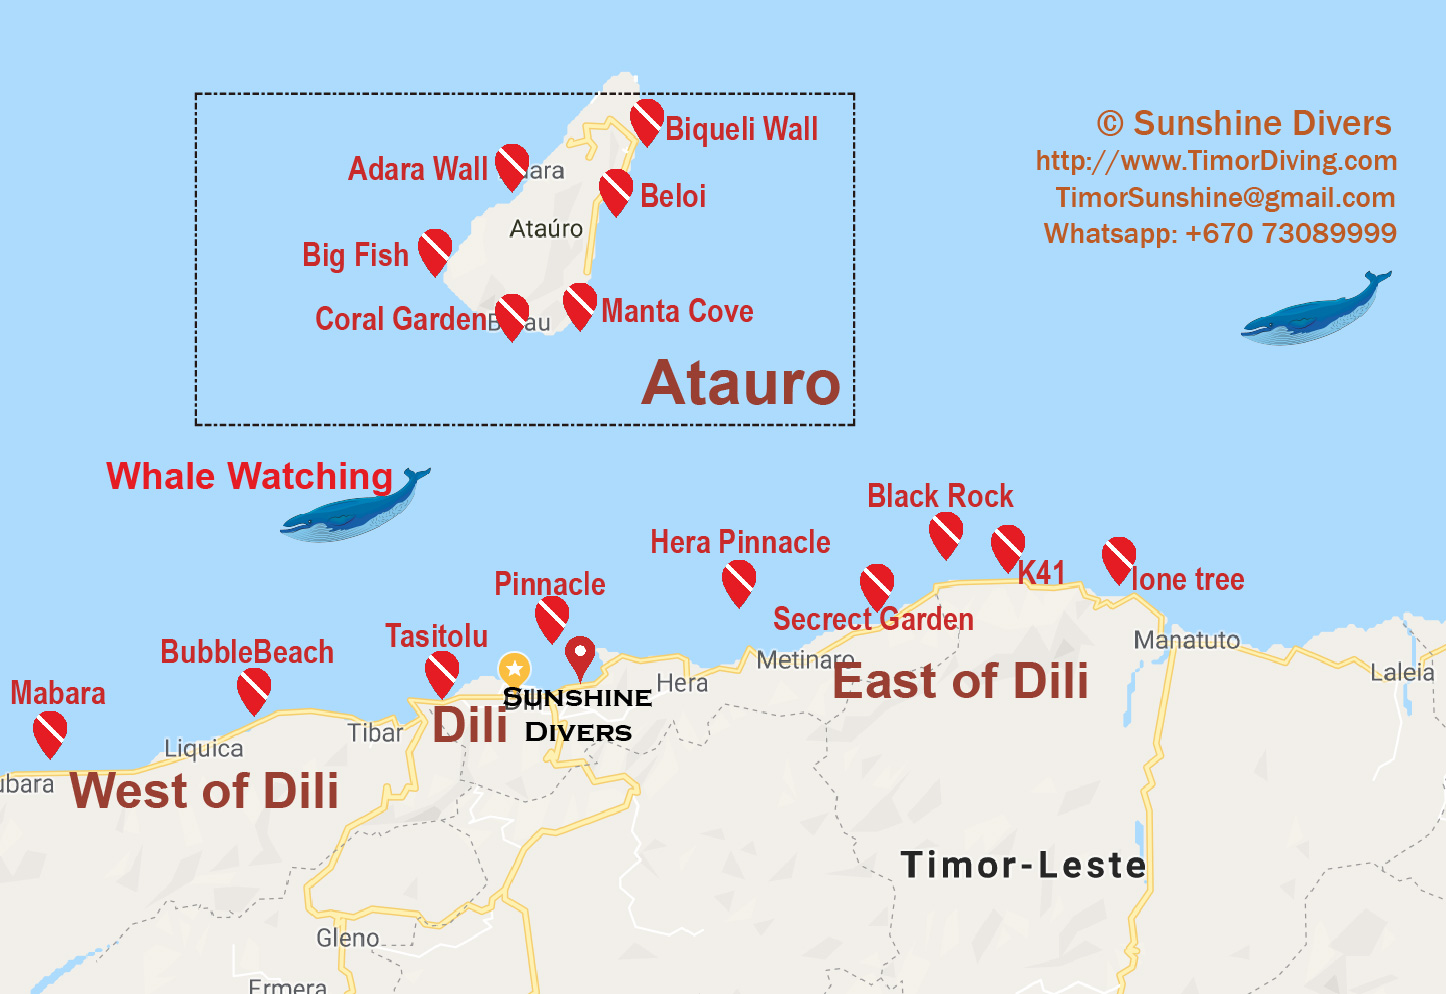 East Timor / Timor-Leste dive site map